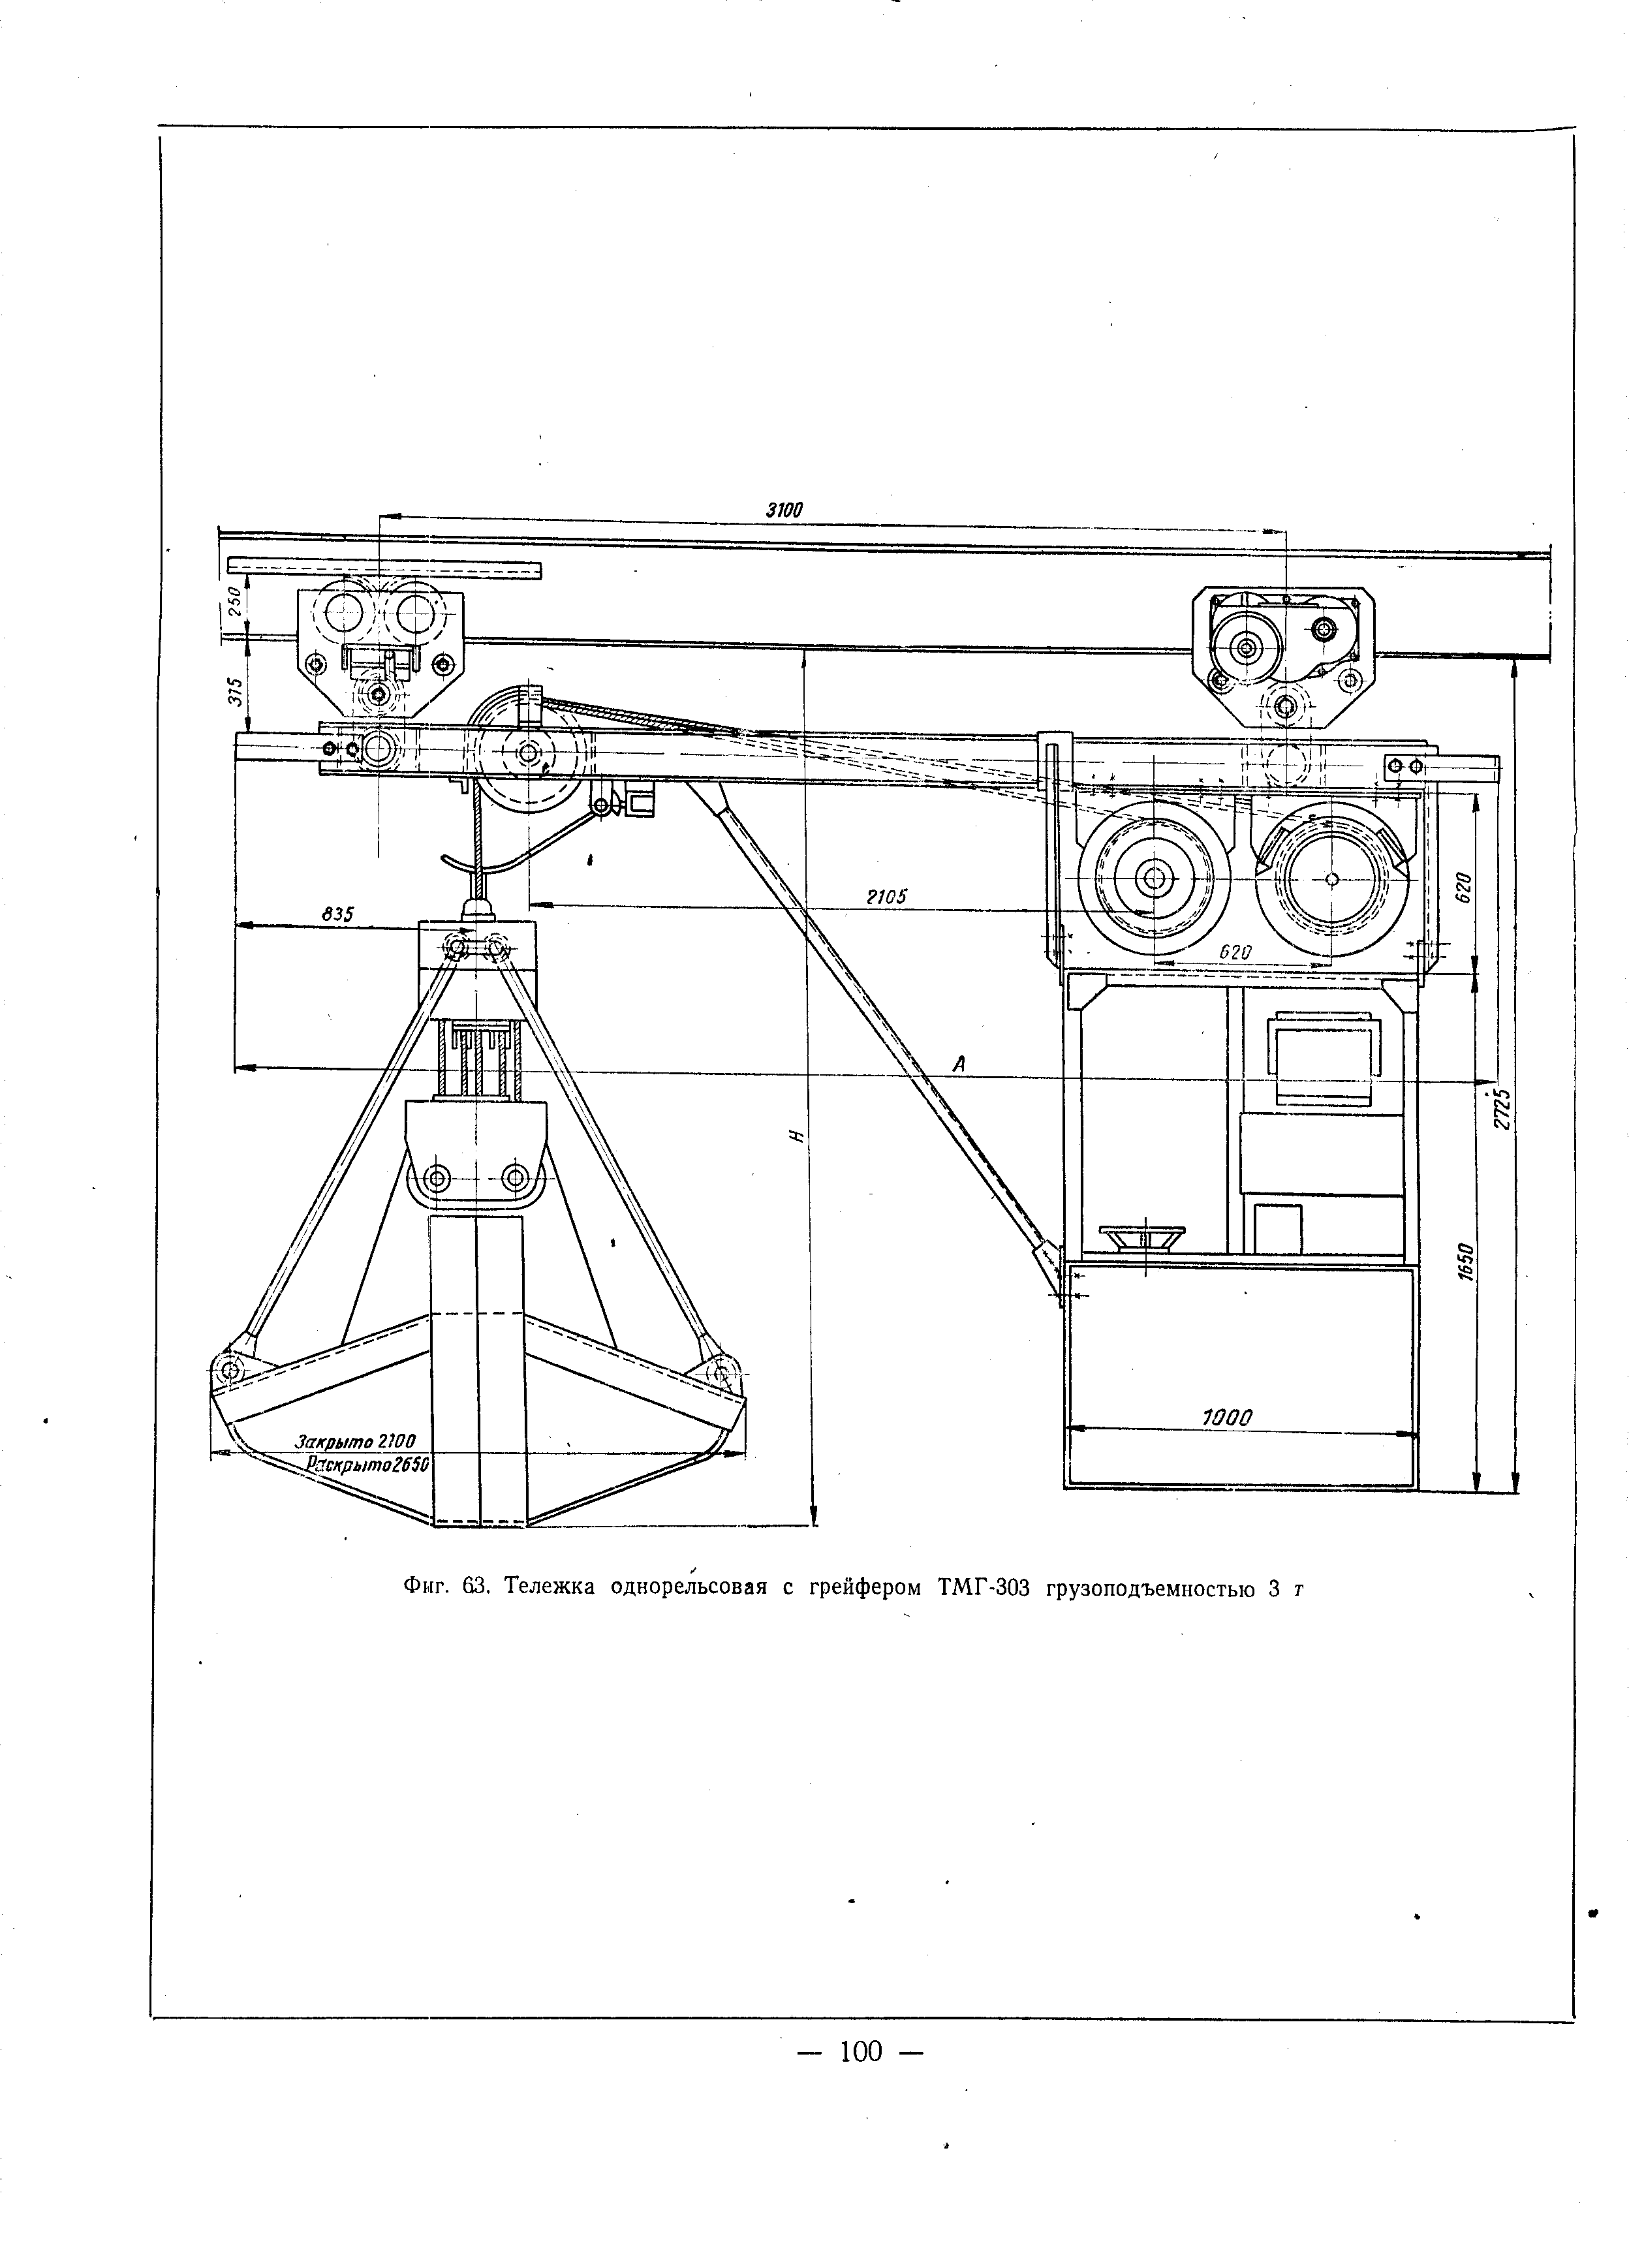 Фиг. 63. Тележка однорельсовая с грейфером ТМГ-303 грузоподъемностью 3 т
